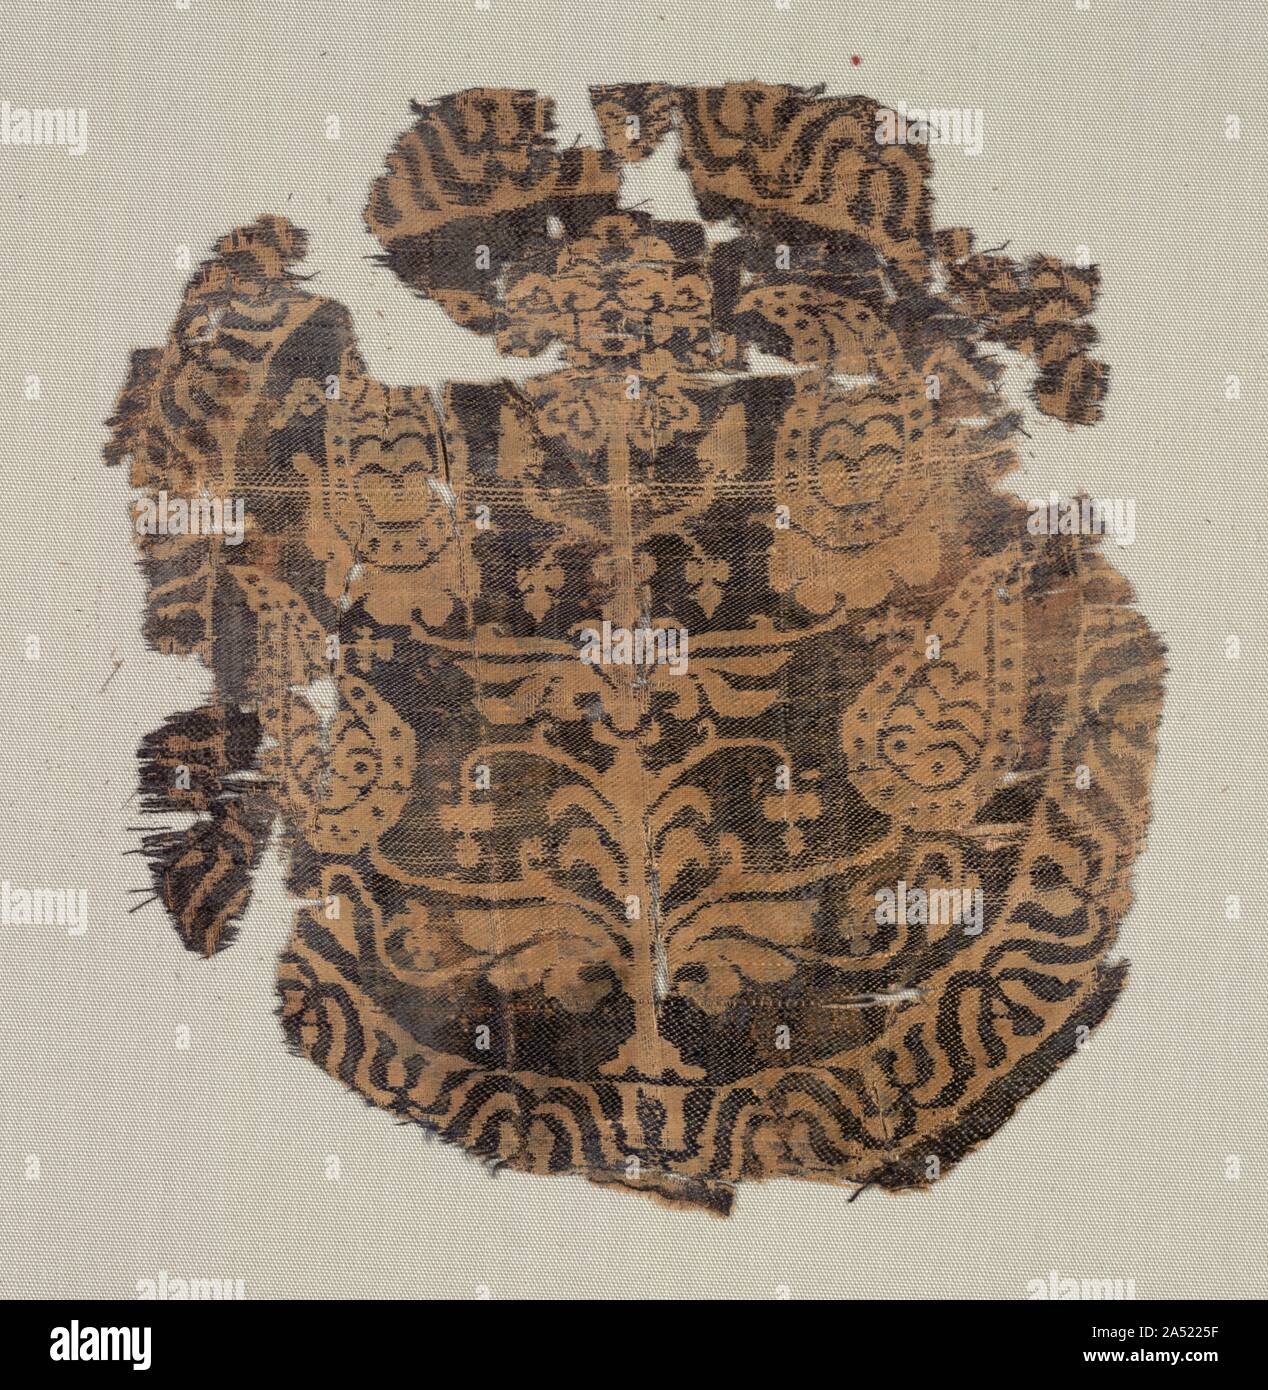 Cocarde avec palmettes curviligne, arbre d'une tunique, 600-850. A l'origine, ces chambres luxueuses, chacune avec des cocardes de la soie au moins trois pièces de correspondance, ont été coupés et cousus sur le devant et le dos d'une tunique, sans doute , en Egypte. Ils appartiennent à un groupe important de décorations soie comparables trouvés en Égypte, d'Akhmim. Dans chaque cercle, une palmette stylisée arbre est inclus dans une lotus simplifié, qui a été modifié à la frontière égyptienne antique motif lotus. Ces soies délicates ont été tissés sur métiers à grand motif de répétition automatique, appelé drawlooms. Bleu foncé et ivoire trames horizontales soie domi Banque D'Images